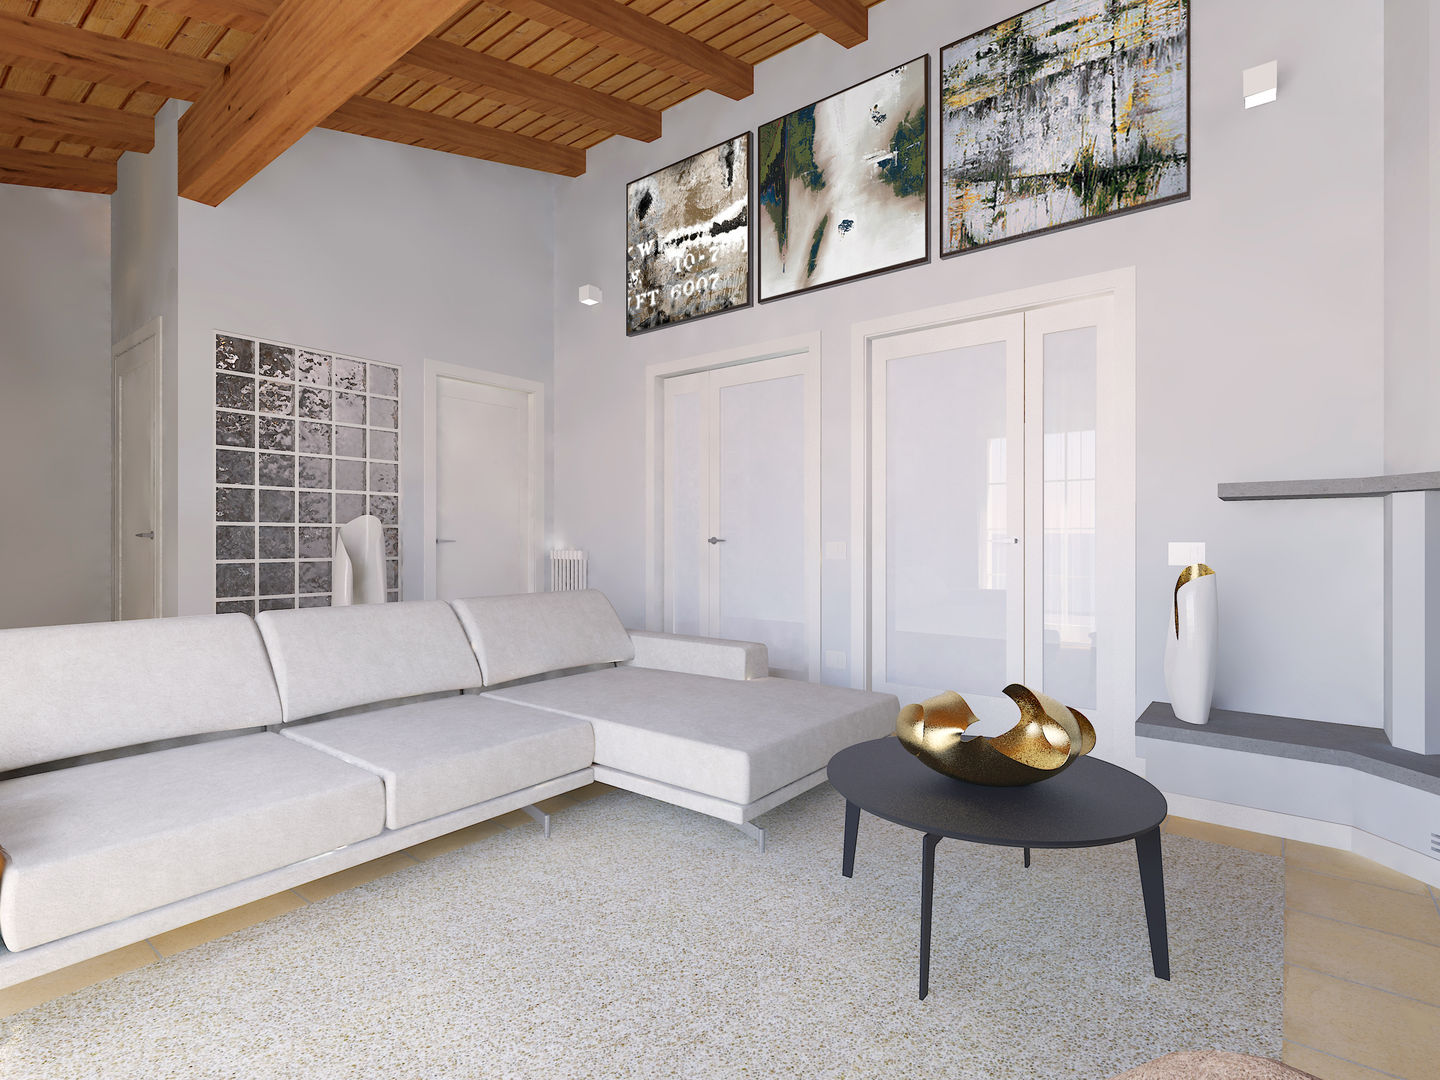 rinnovare un soggiorno in stile moderno, Flavia Benigni Architetto Flavia Benigni Architetto Salas modernas